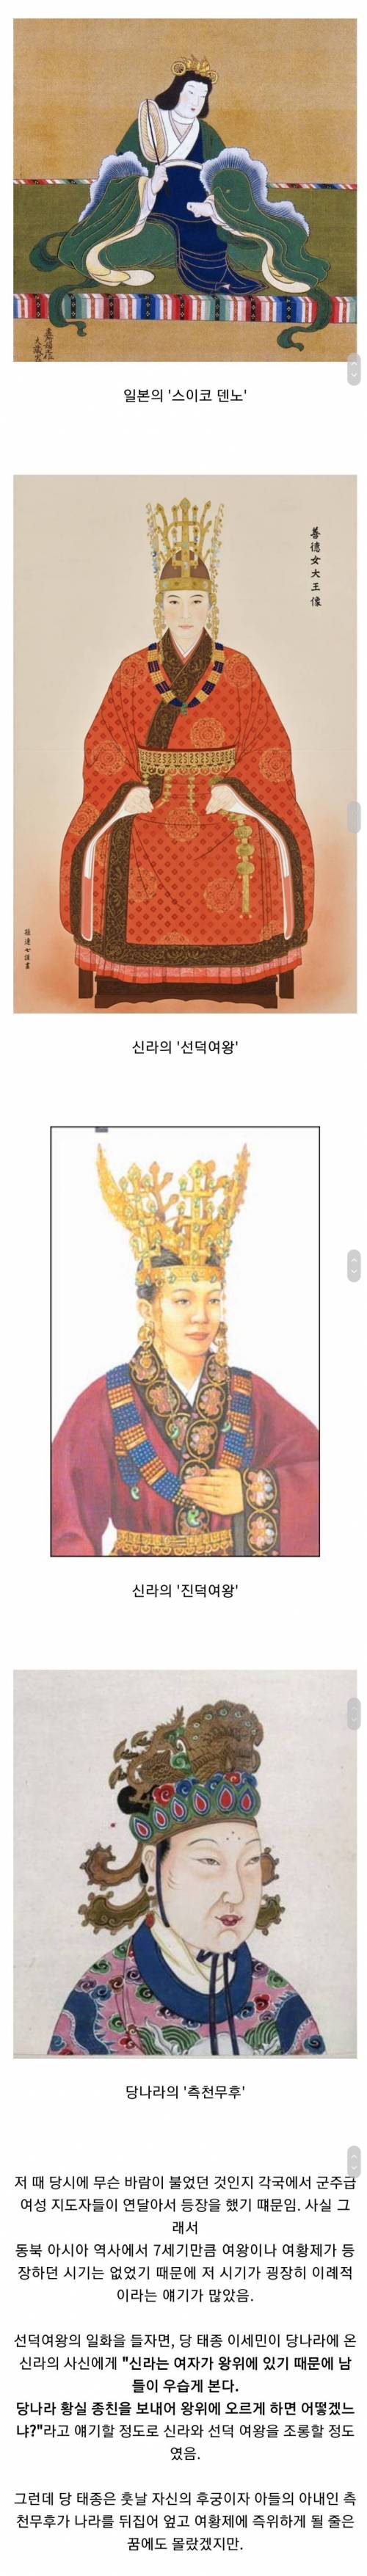 8 특이한 역사를 가진 7세기 동아시아.jpg